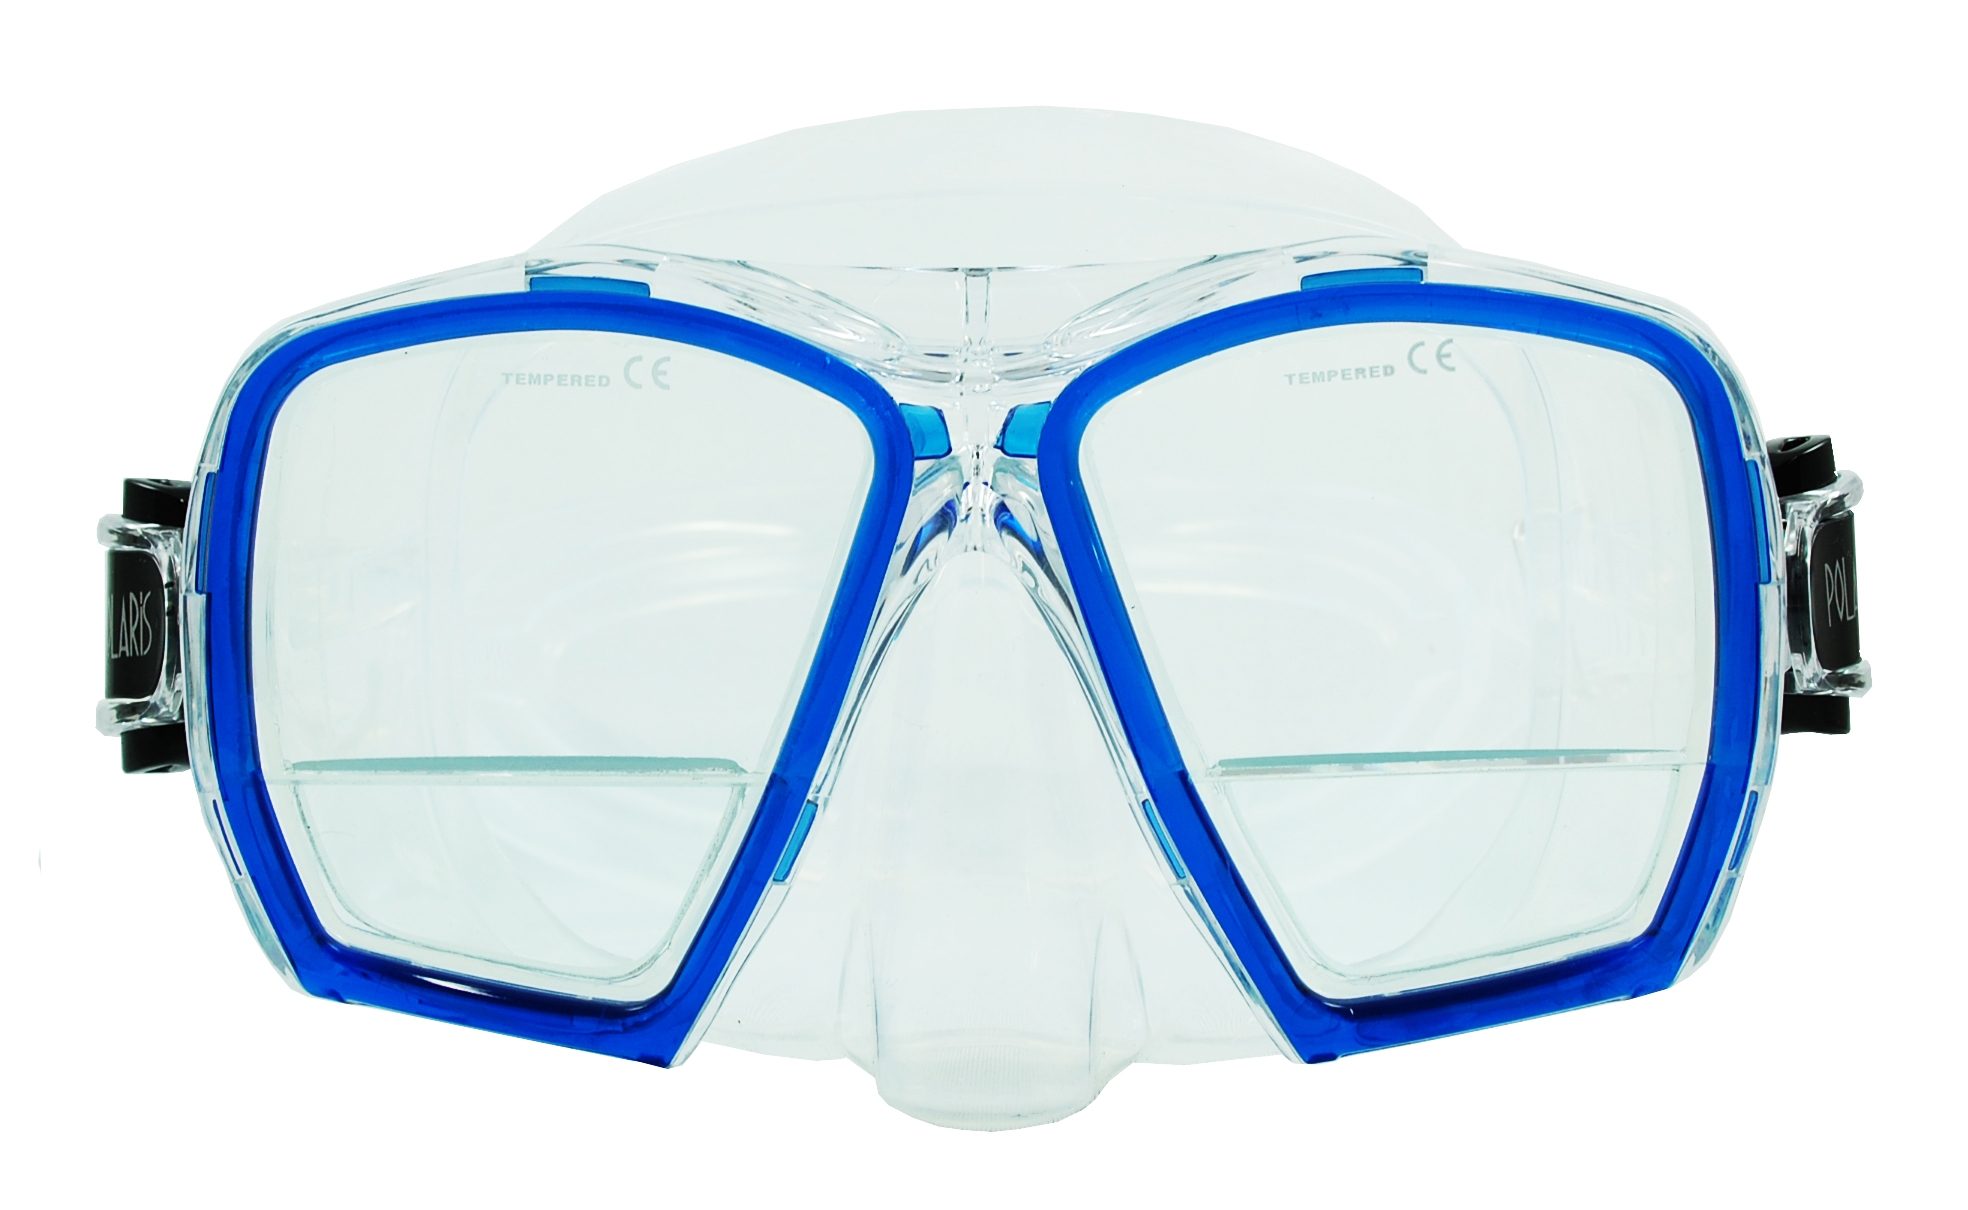 Polaris PLUS Tauchmaske mit integrierten +1.75 Dioptrien Gläsern